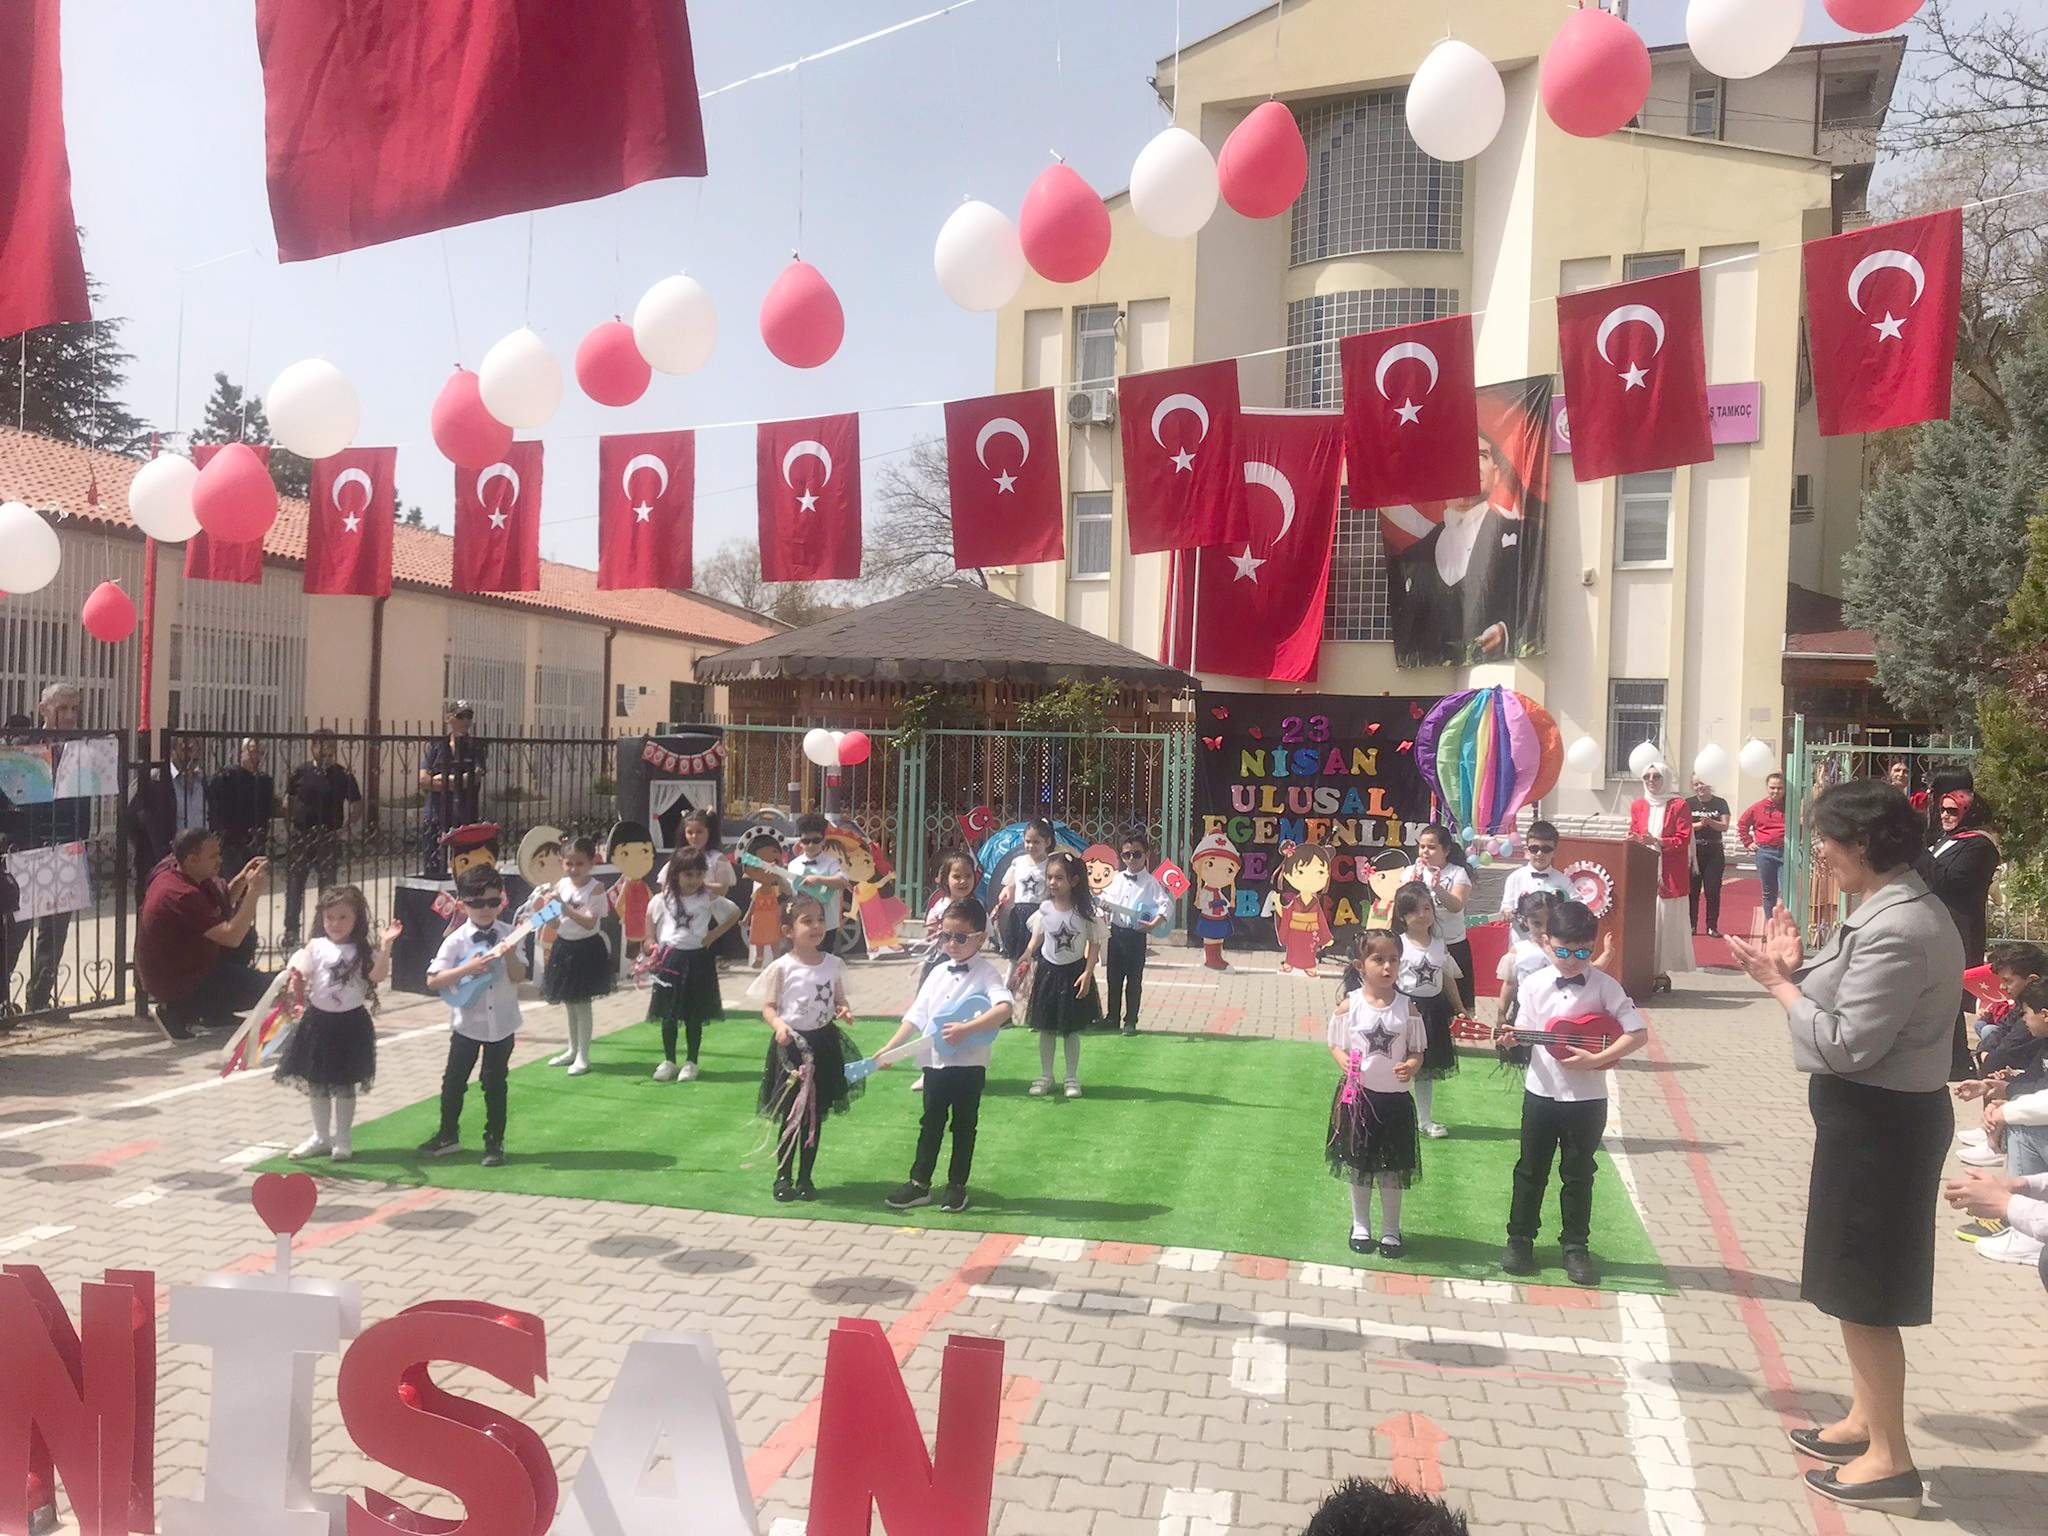 Şehit Çağdaş Tamkoç Anaokulundan 23 Nisan Kutlaması - Kırıkkale Haber, Son Dakika Kırıkkale Haberleri